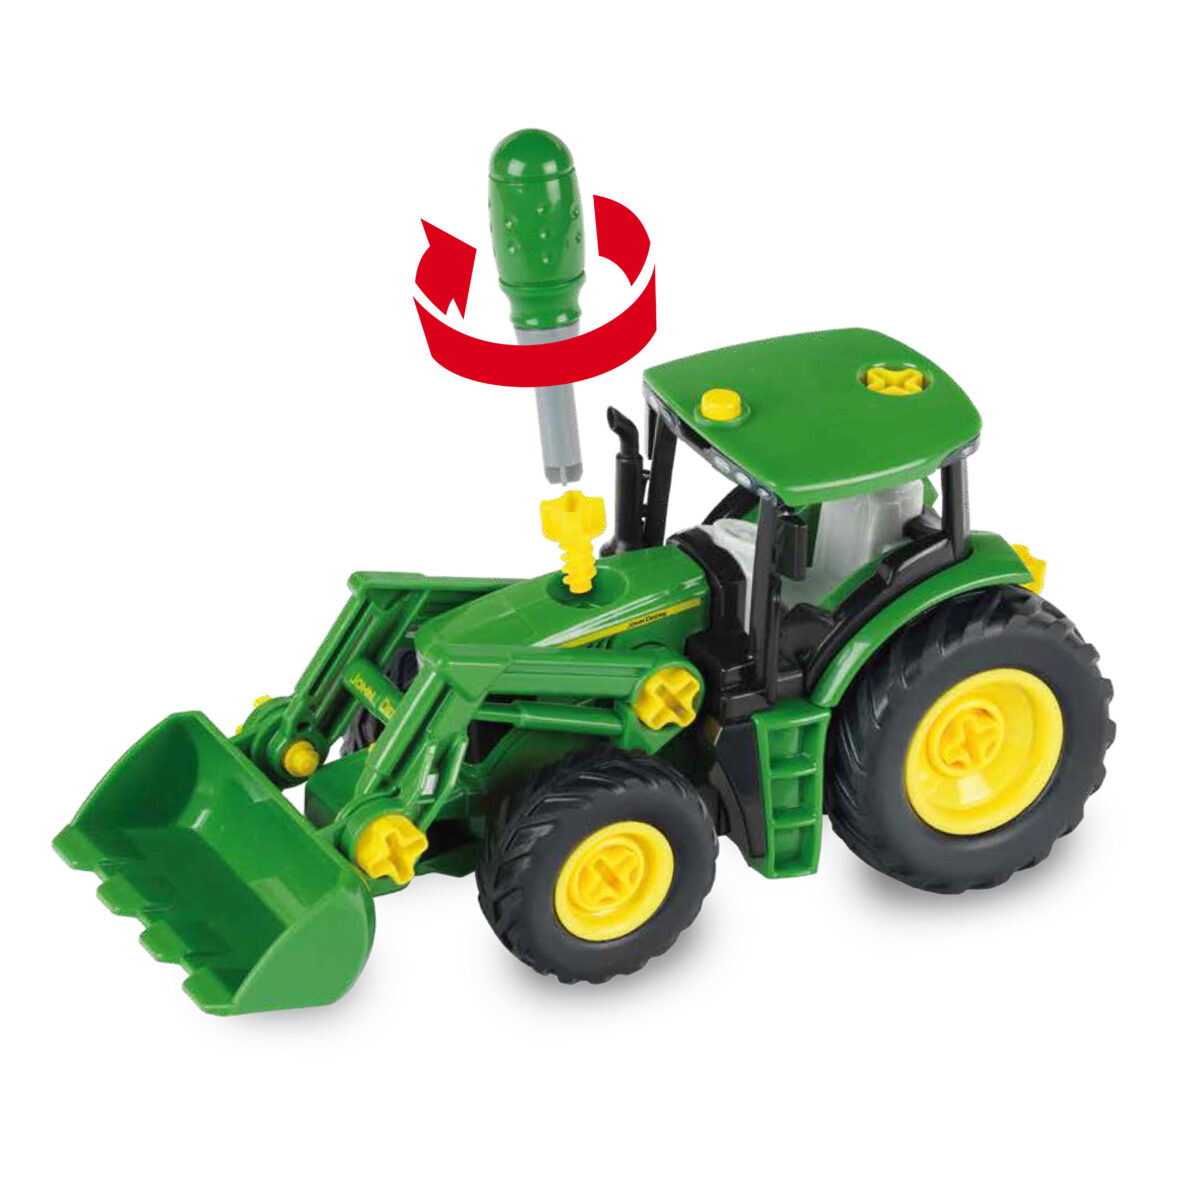 John Deere – Traktor, 2 in 1 mit Holz- und Heuwagen, 1:24